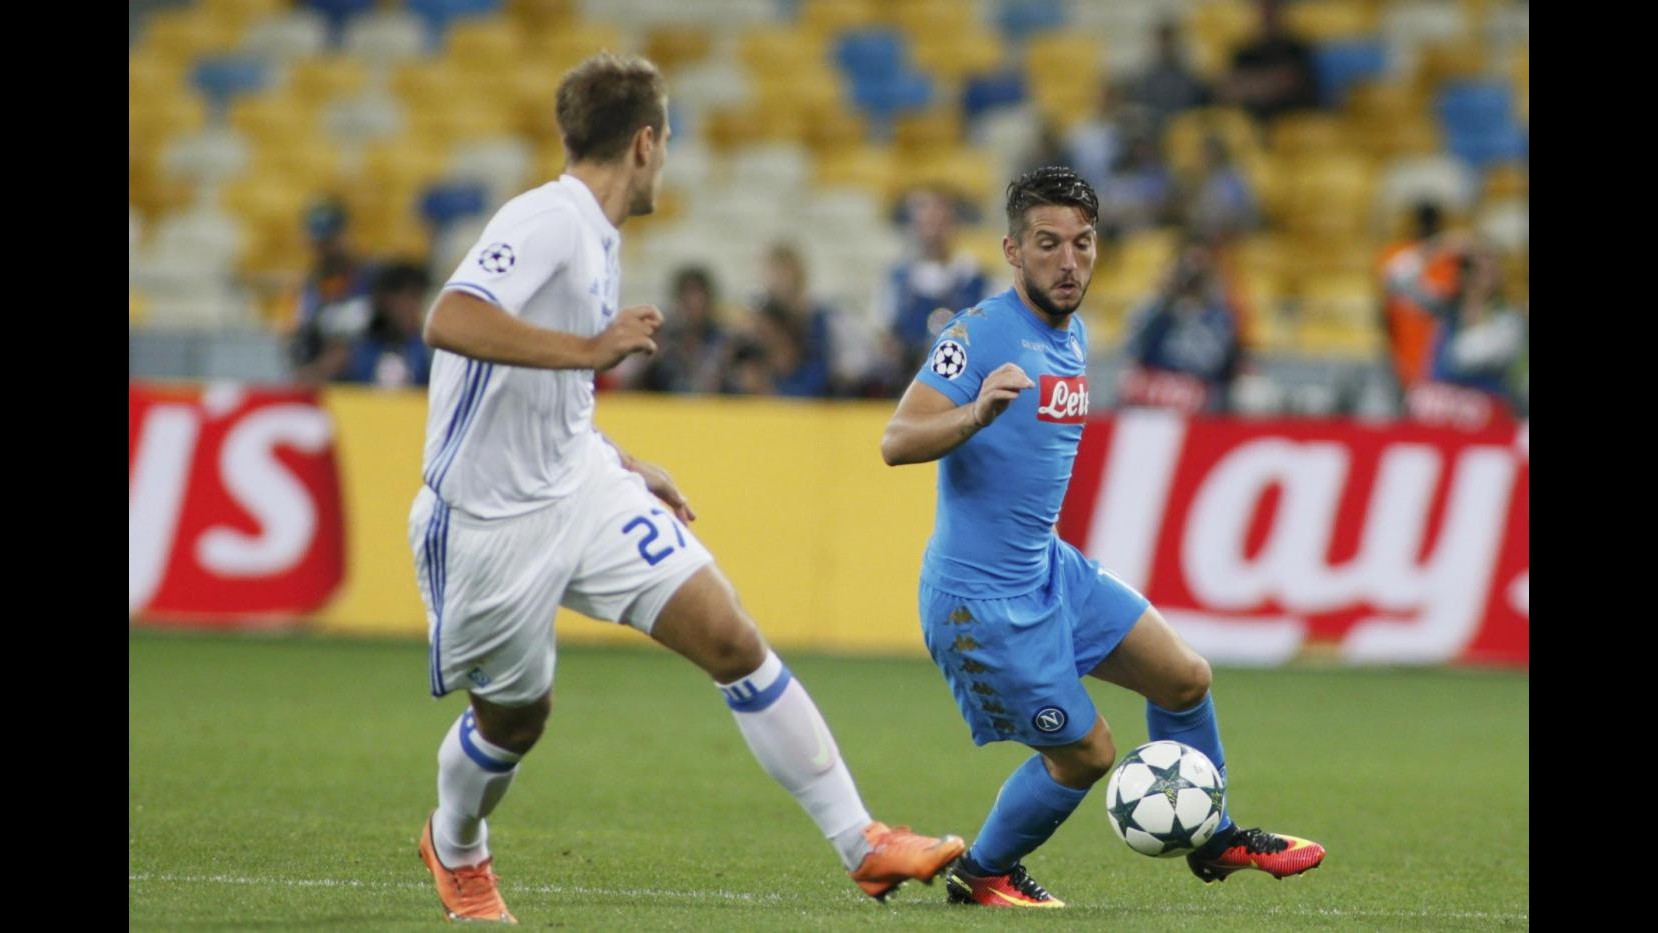 FOTO Champions, Milik lancia Napoli a Kiev: 2-1 alla Dinamo